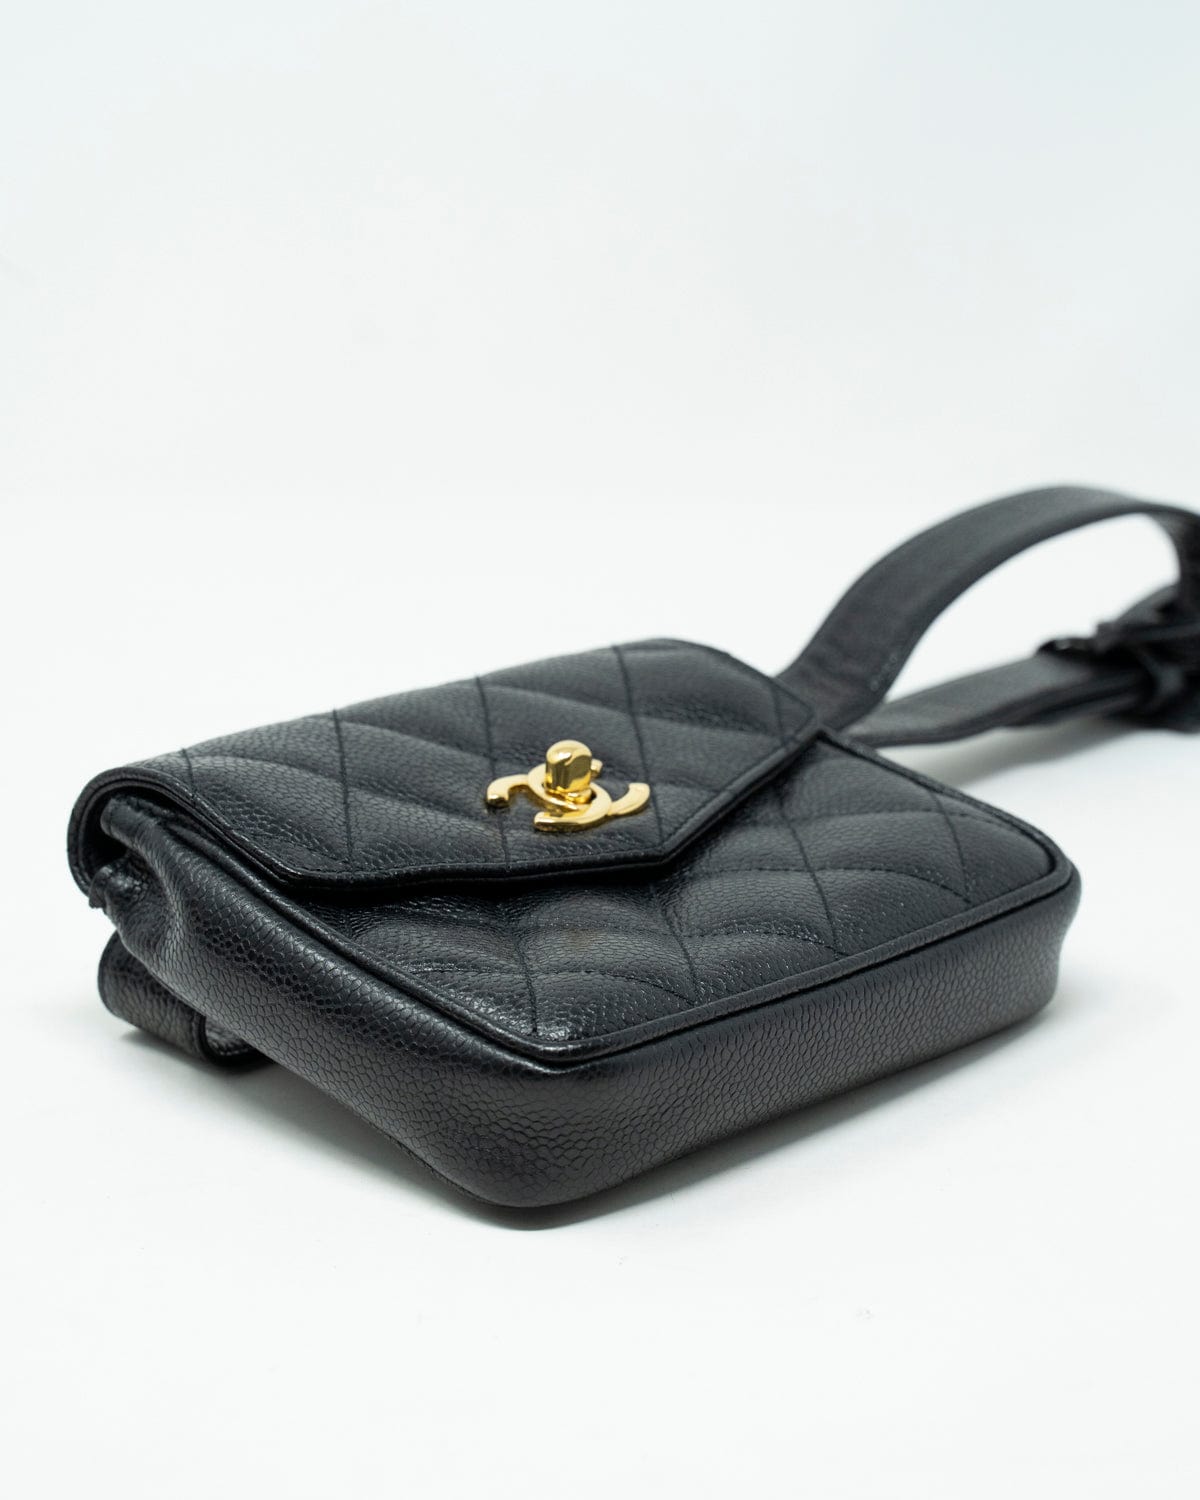 Chanel Chanel black caviar belt bag gold hardware - ASL1955